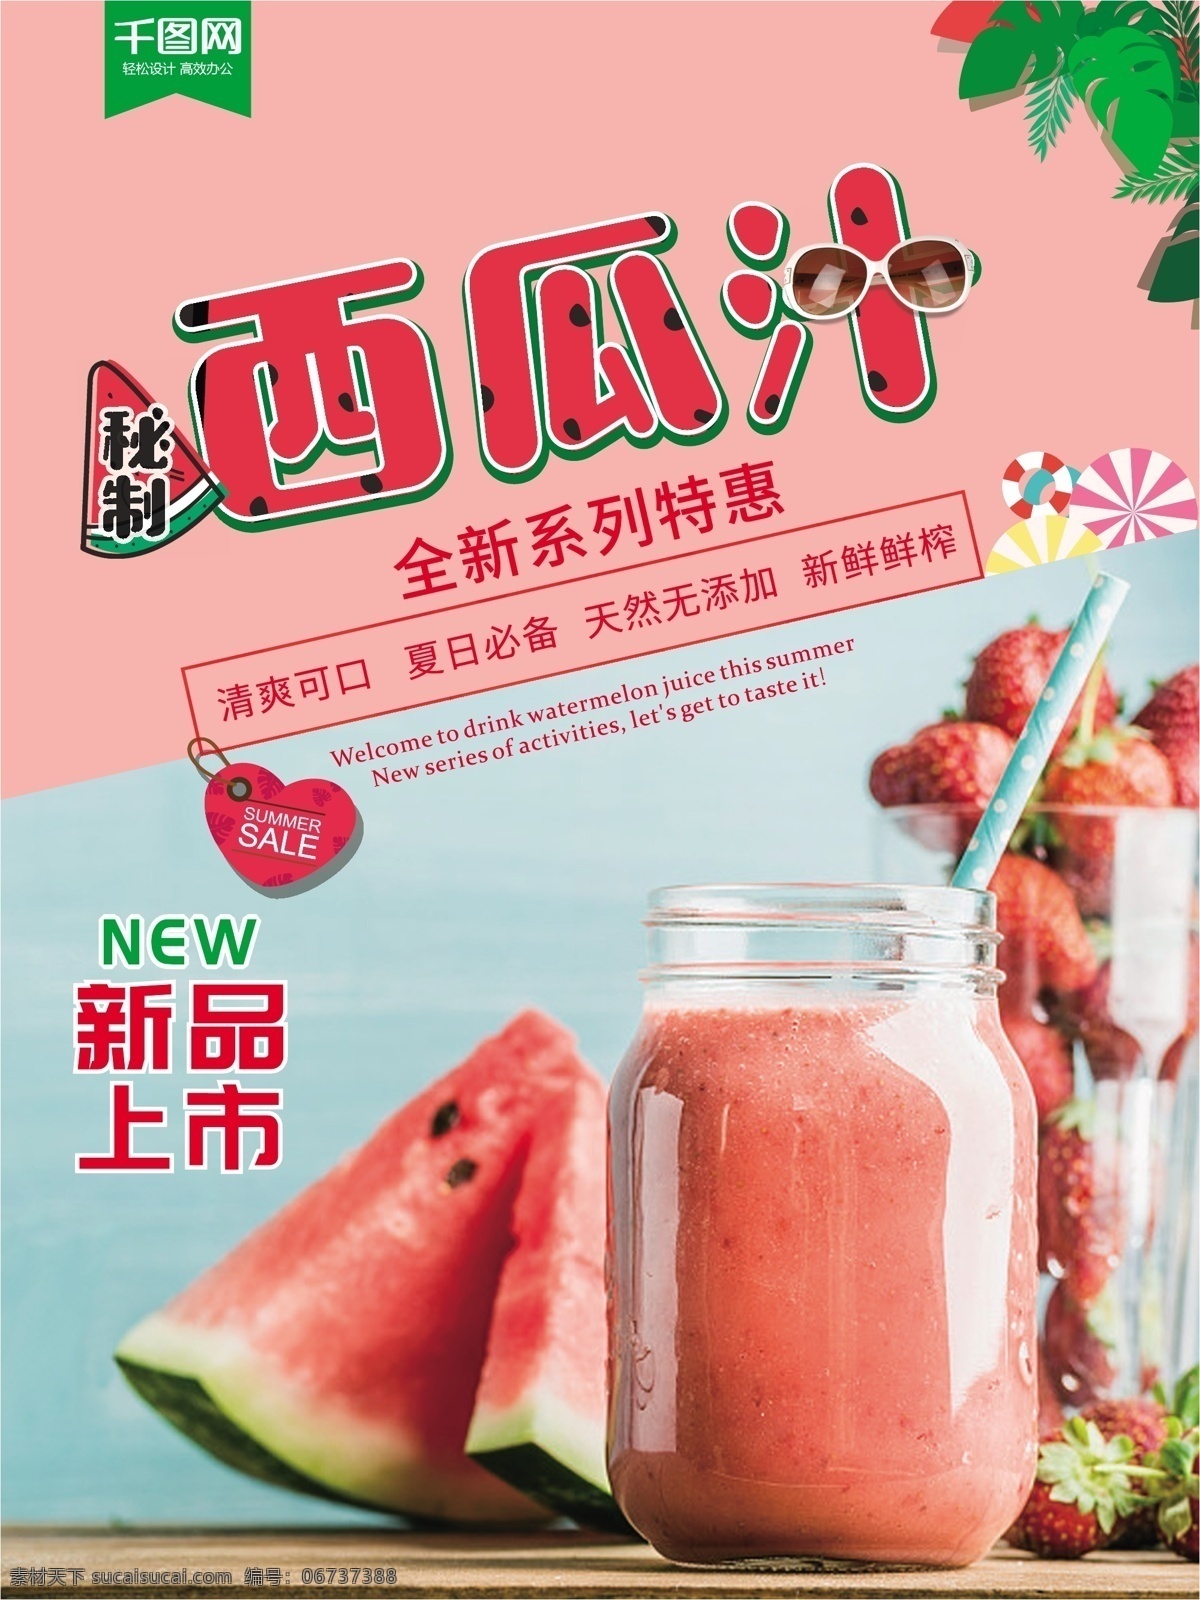 秘 制 西瓜汁 夏季 饮料 促销 海报 夏日冰饮 新品上市 夏天